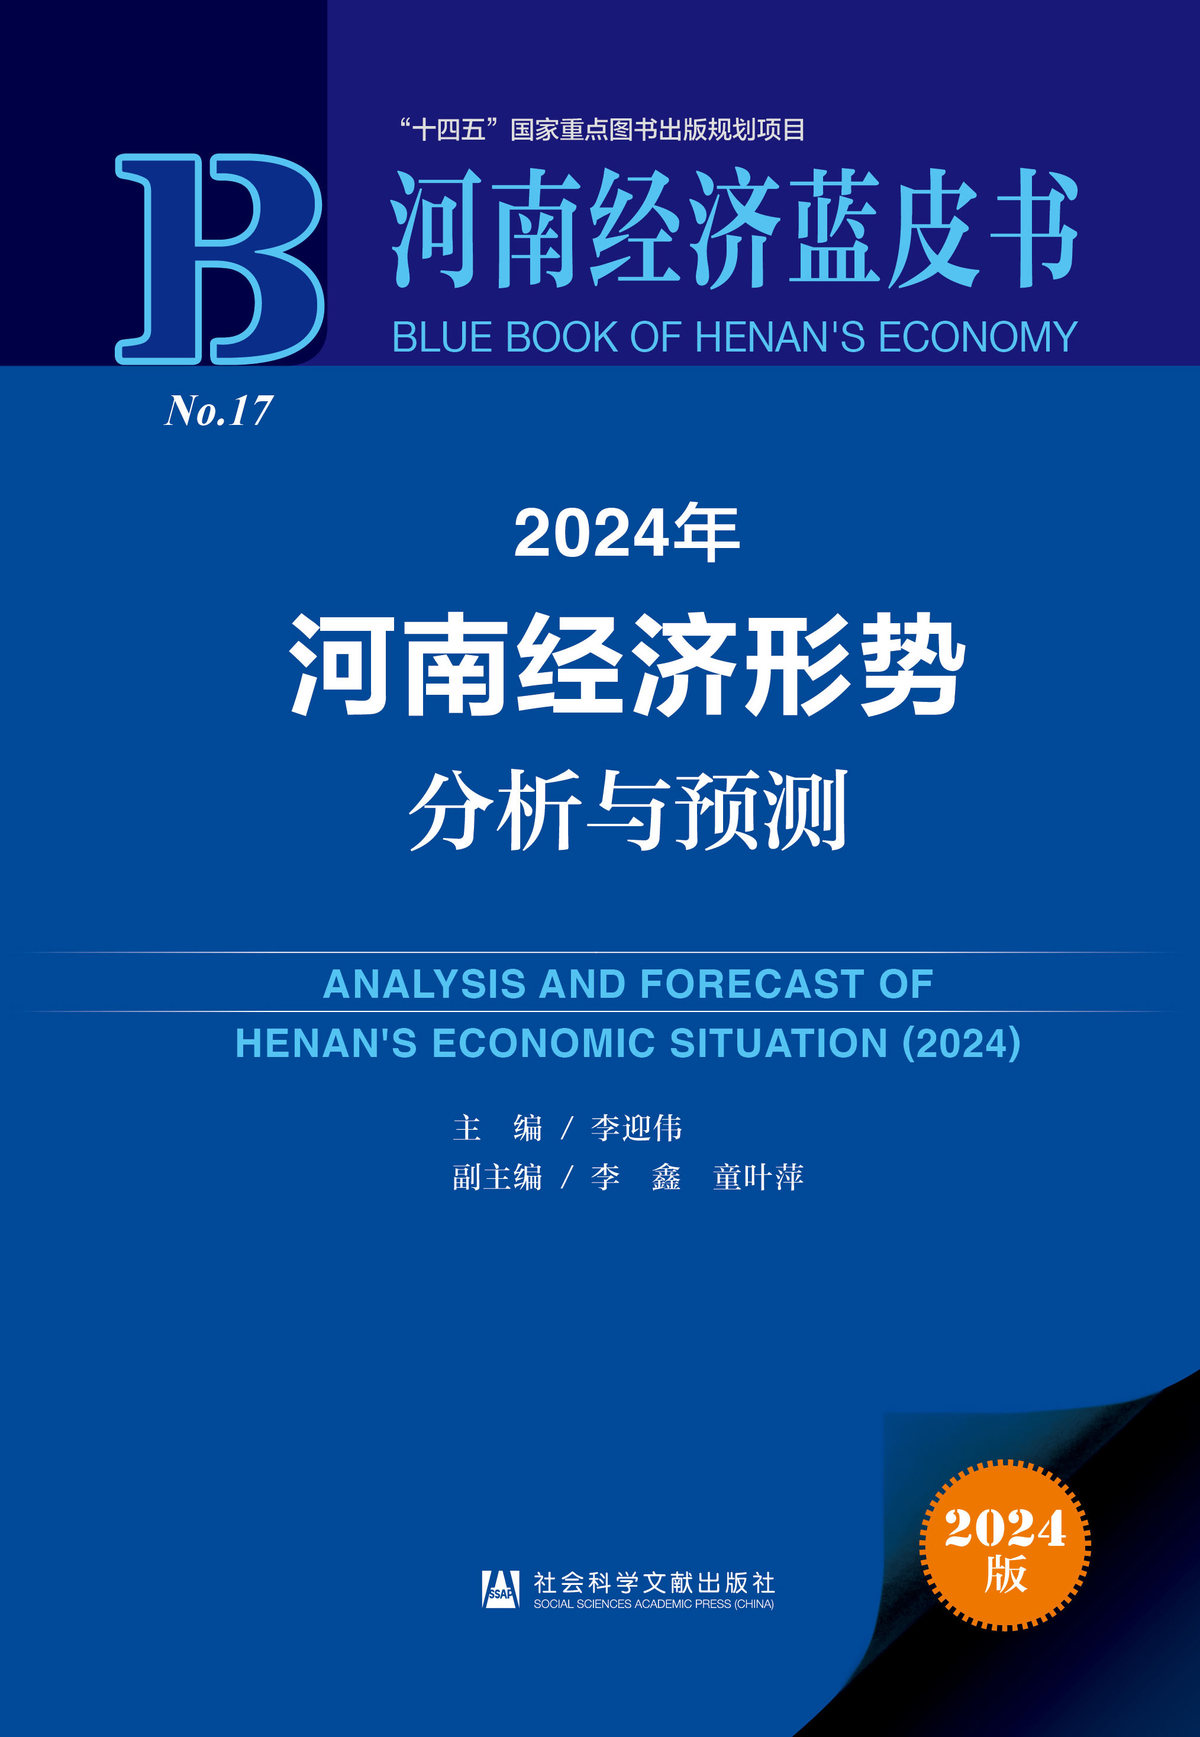 2024年《河南经济蓝皮书》 助力全国两会河南代表履职尽责